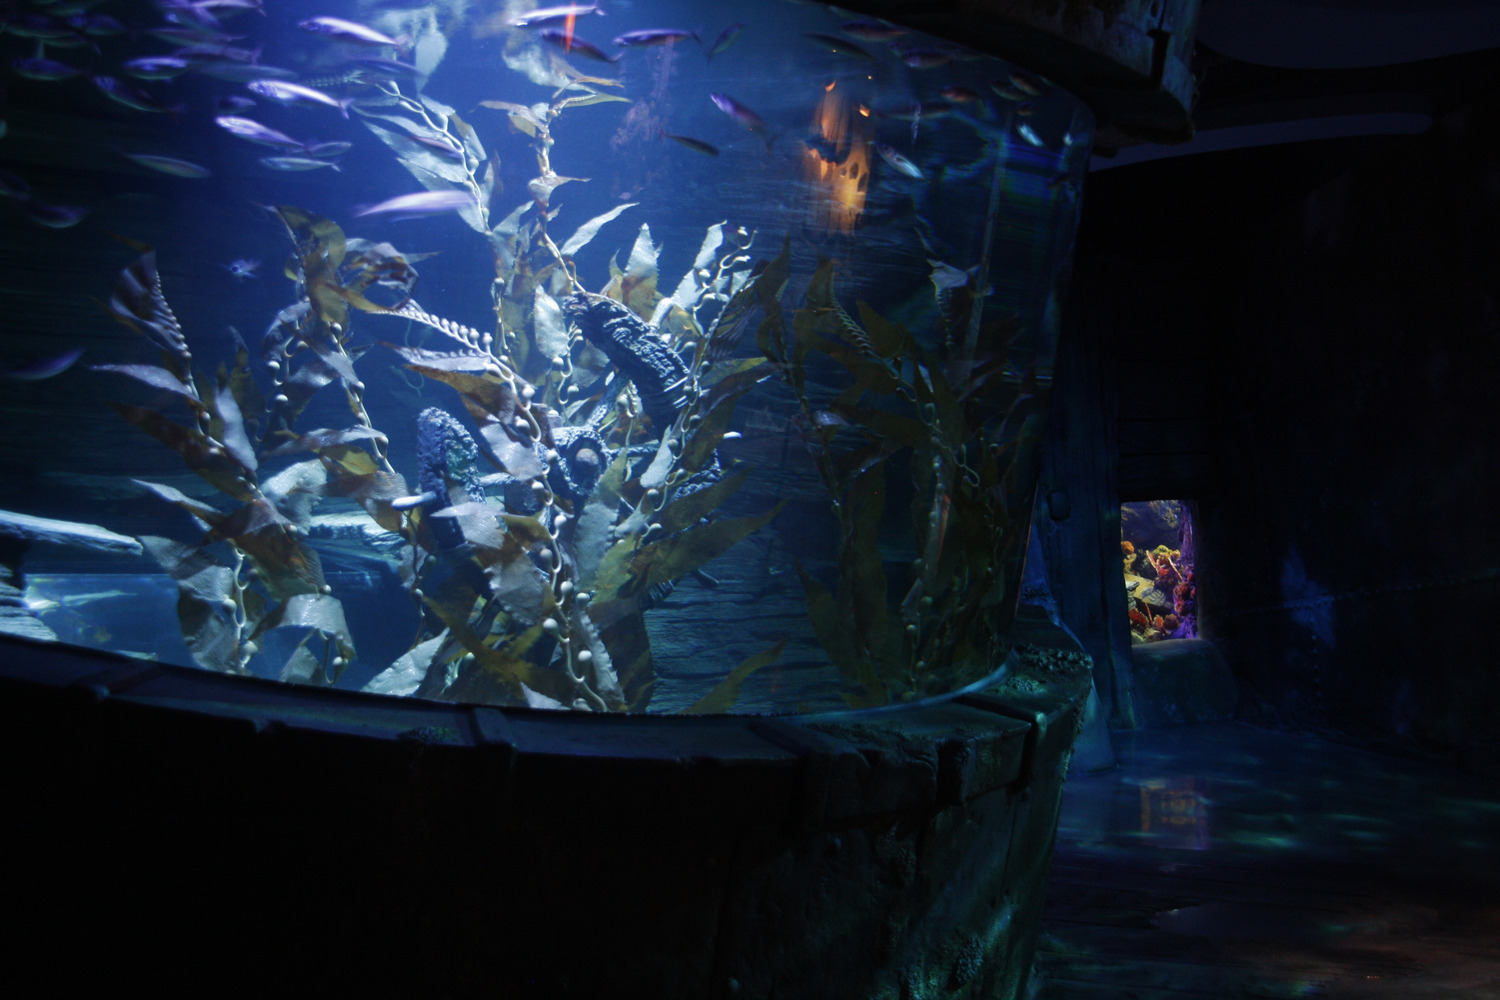 A fish tank in an aquarium.